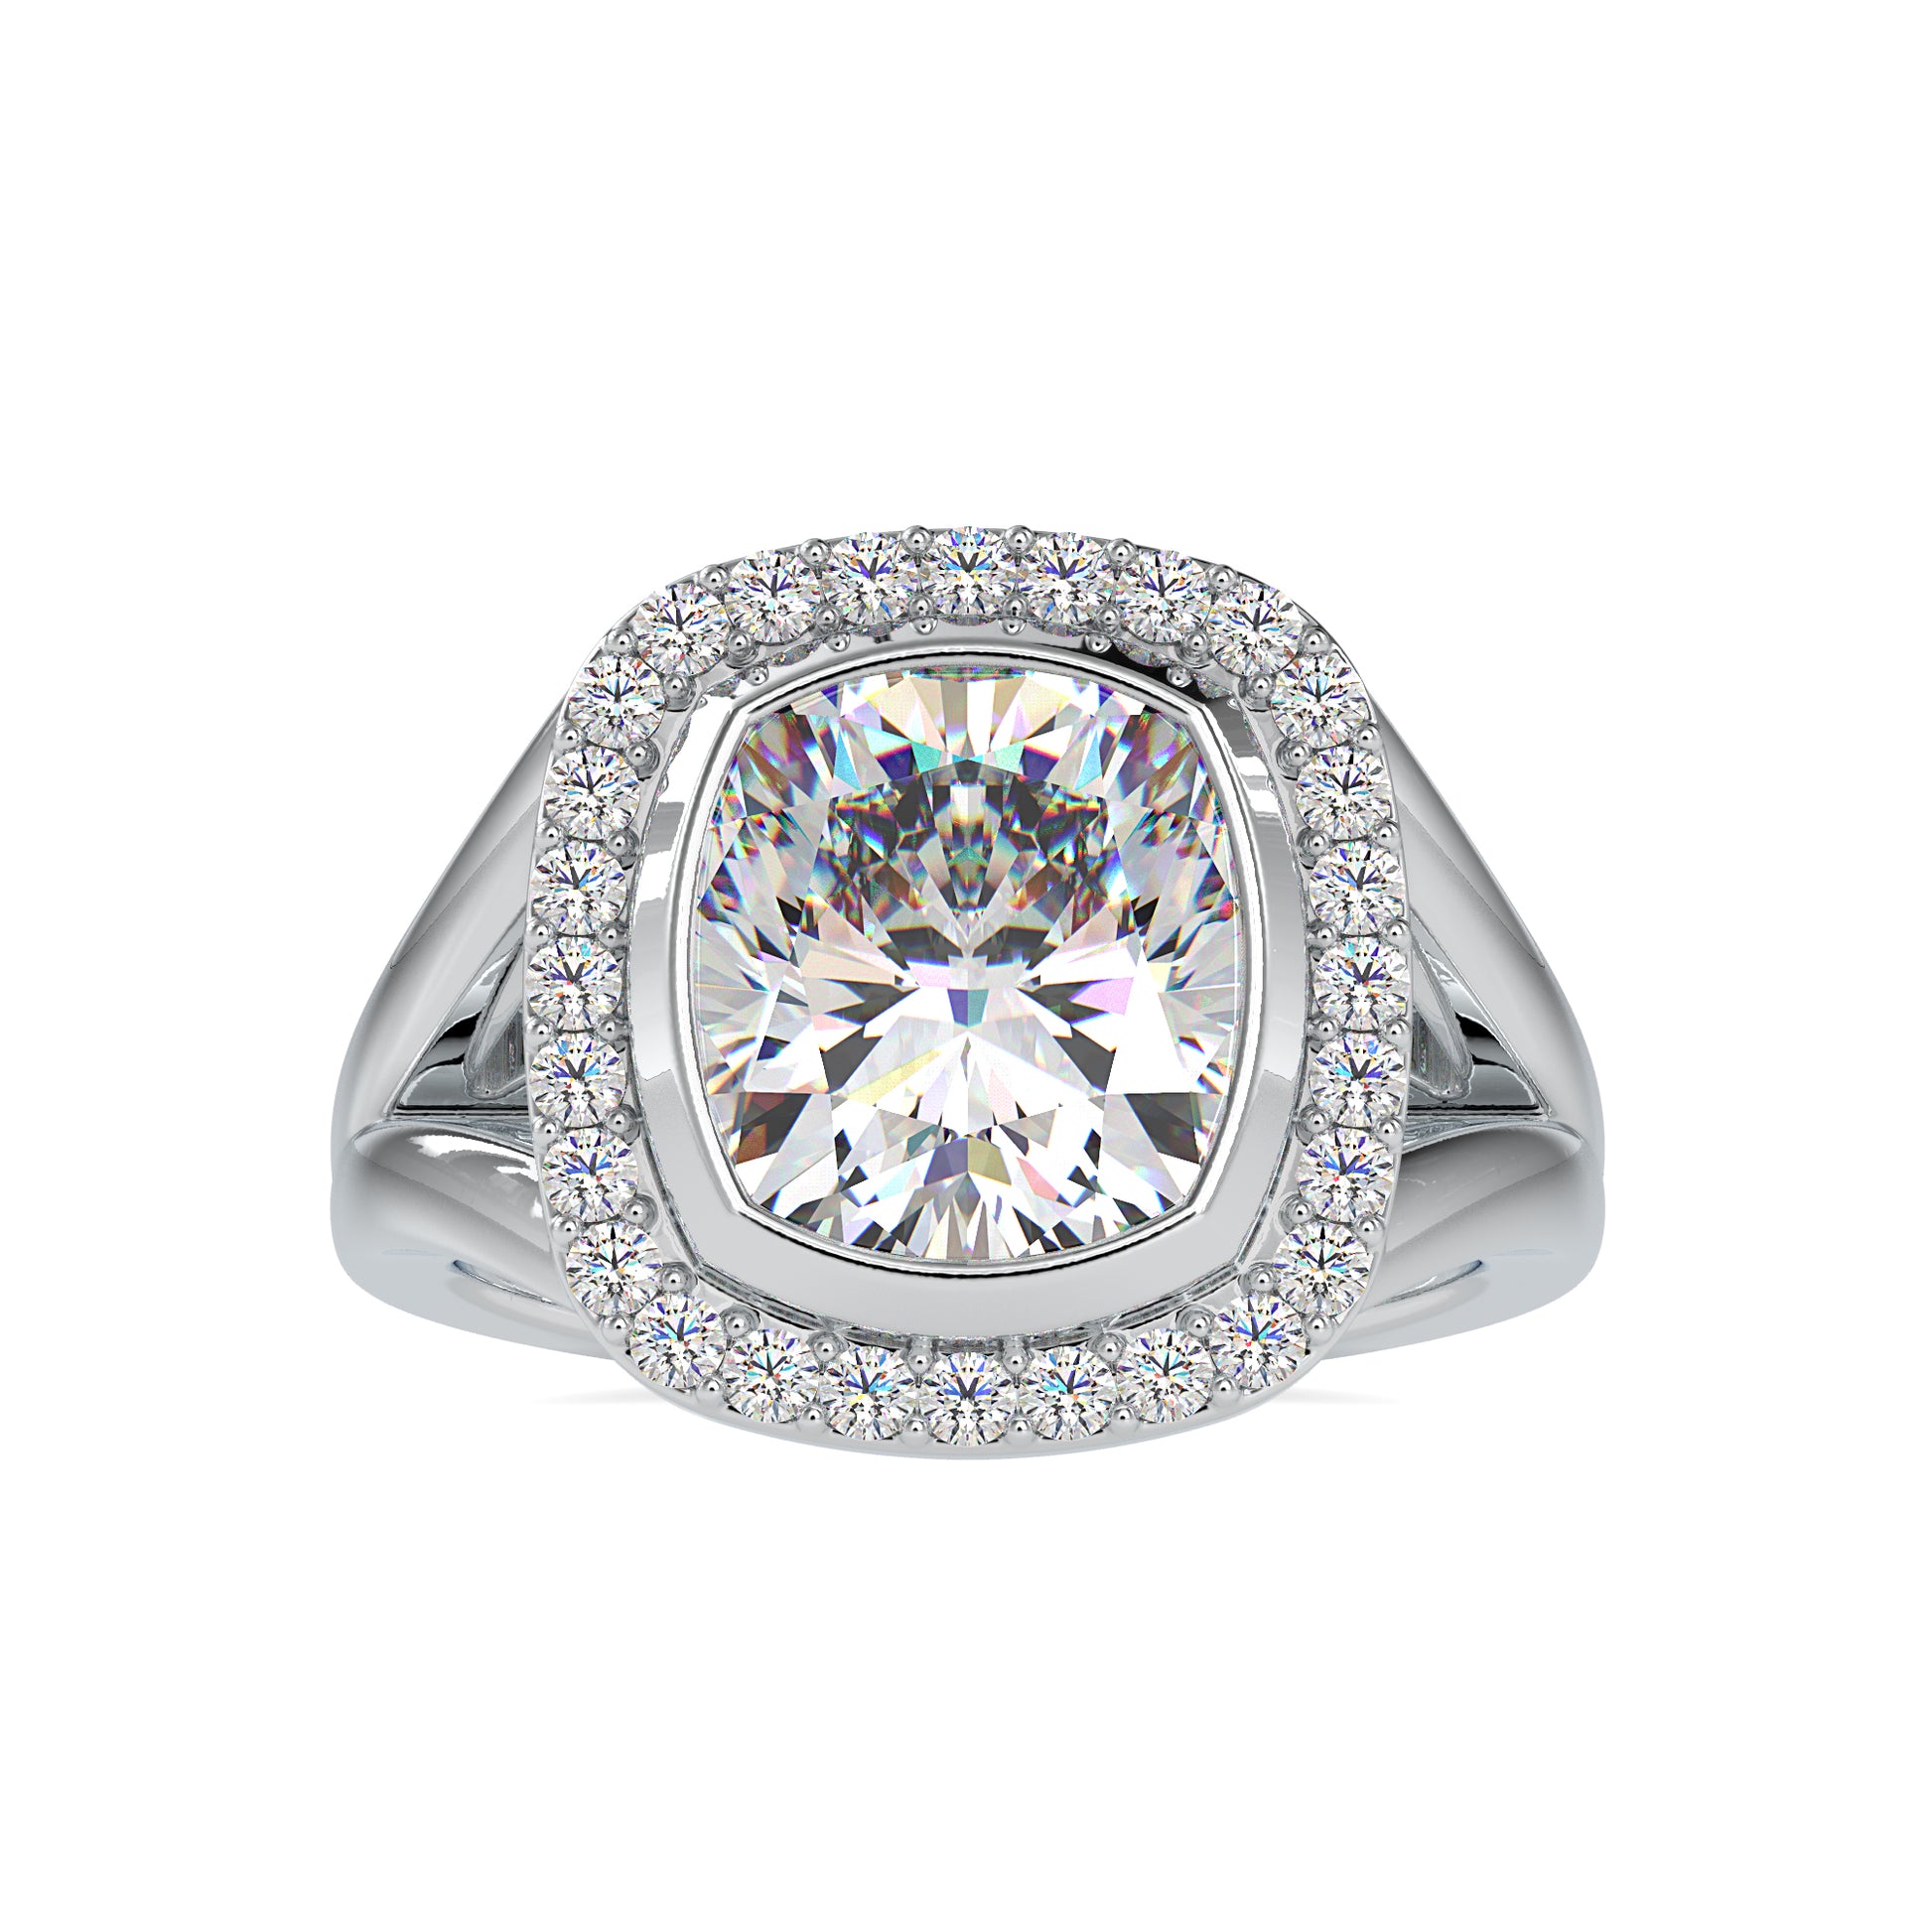 The Mia Ring - Vai RaMia Moissanite diamond Halo Ring - 6.26 Ct